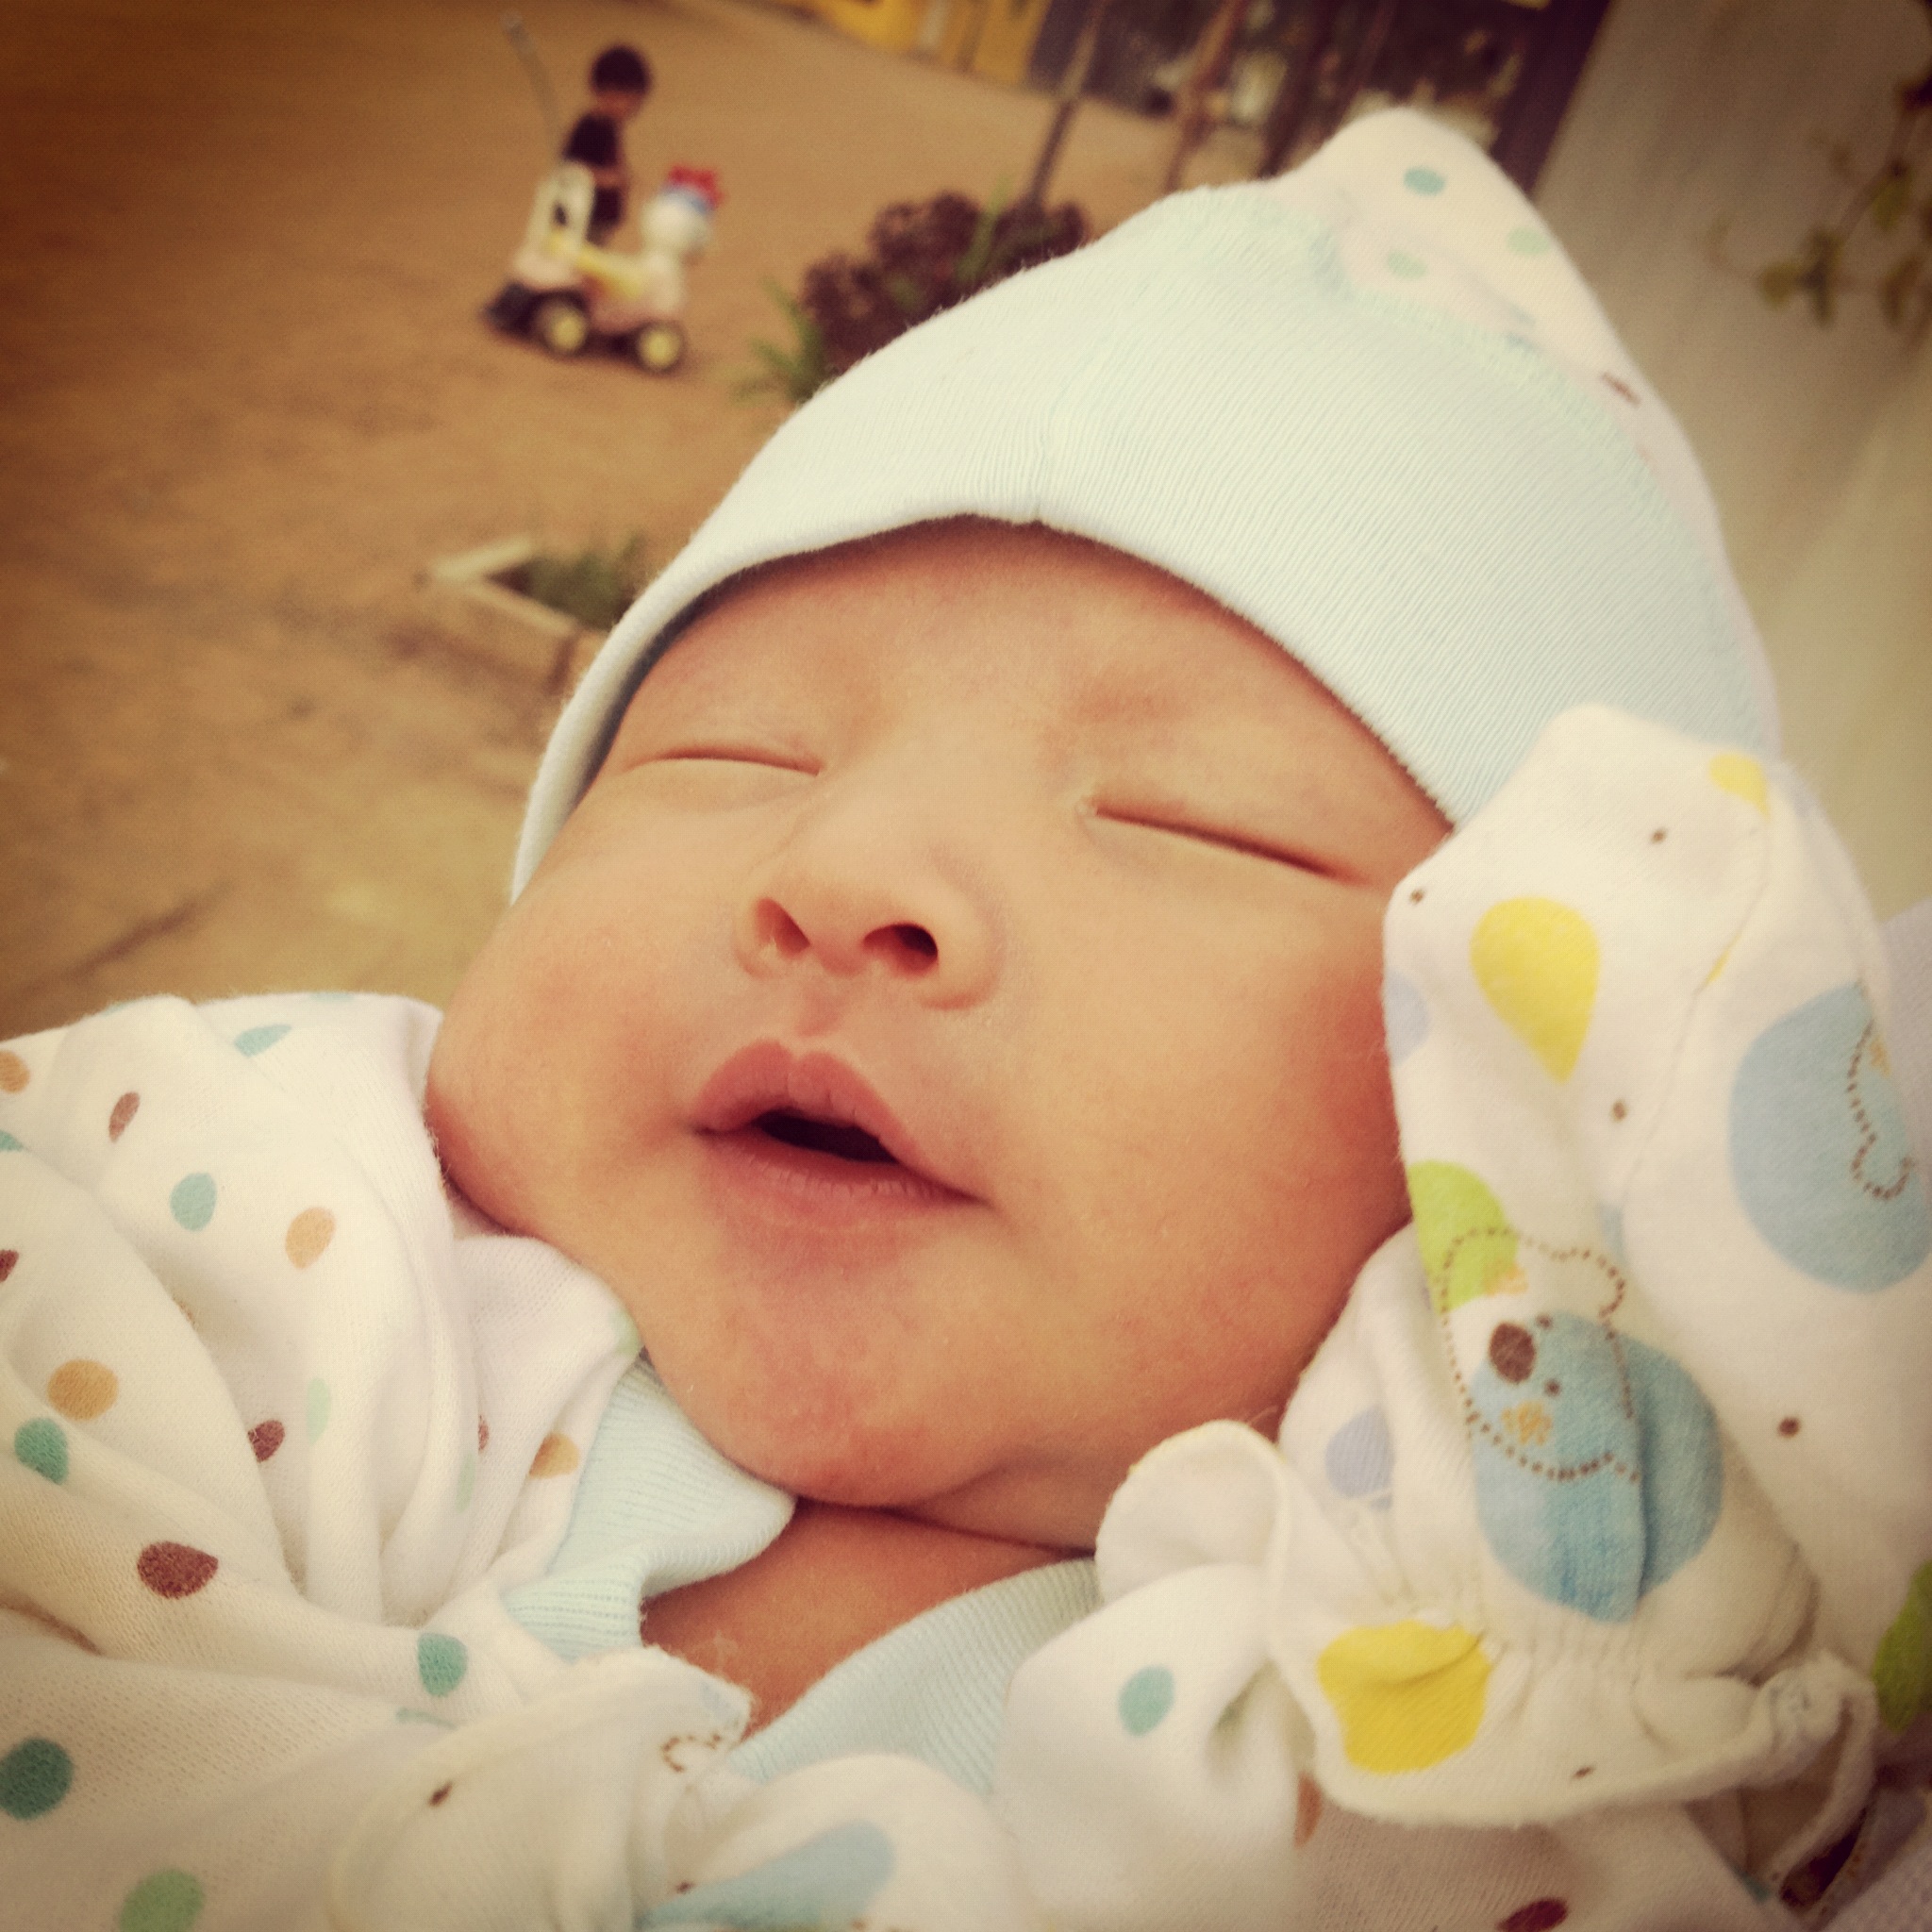 Gambar Anak Bayi Cowok Yang Lucu Terbaru Display Picture Update